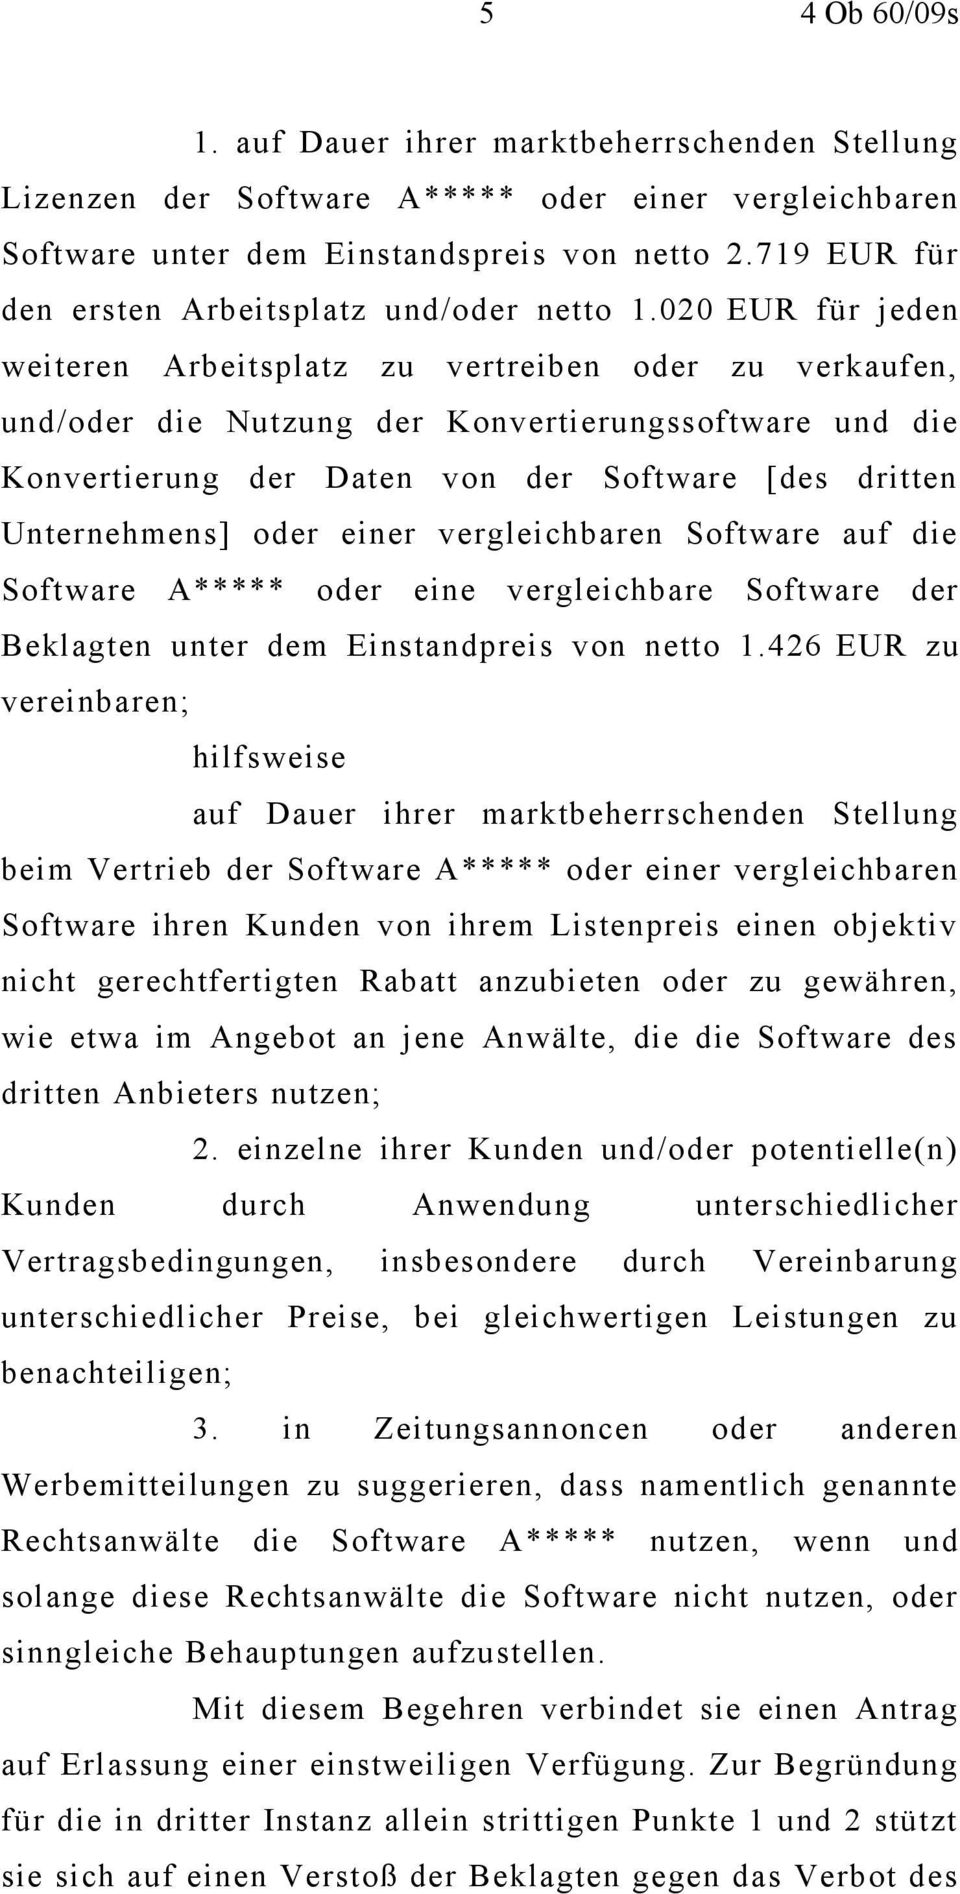 020 EUR für jeden weiteren Arbeitsplatz zu vertreiben oder zu verkaufen, und/oder die Nutzung der Konvertierungssoftware und die Konvertierung der Daten von der Software [des dritten Unternehmens]